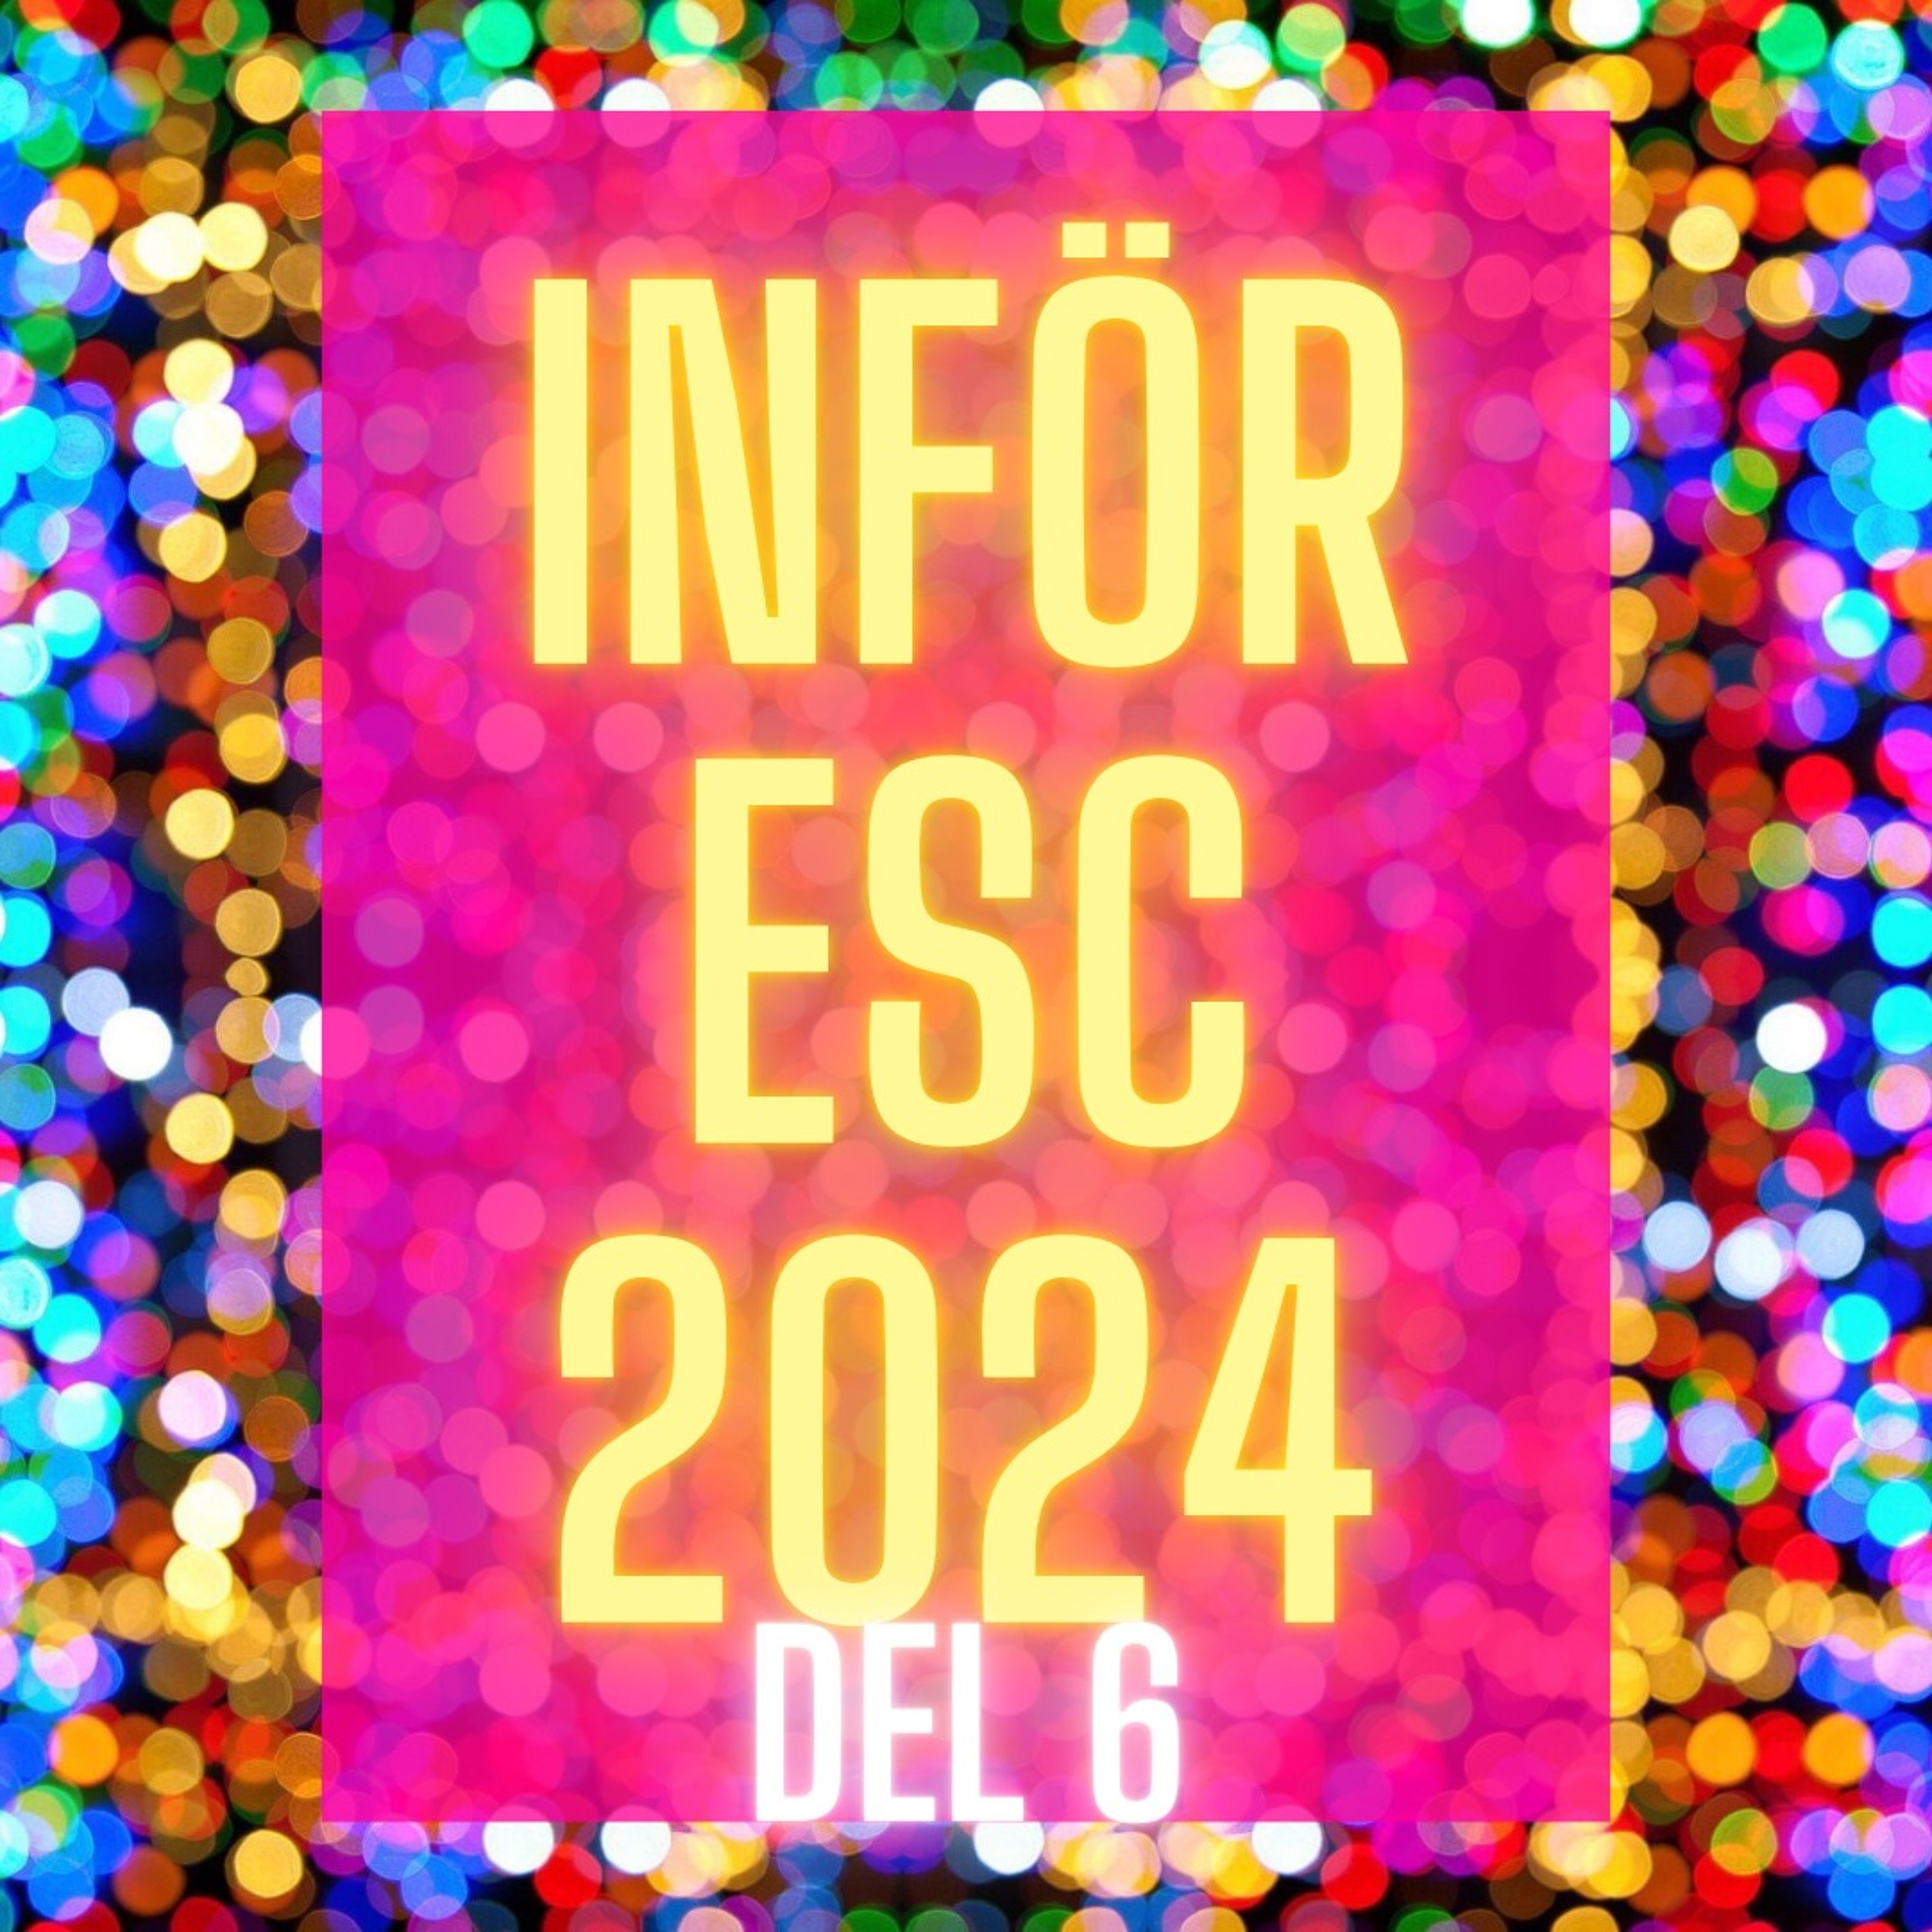 S8A14 - Inför ESC 2024 Del 6